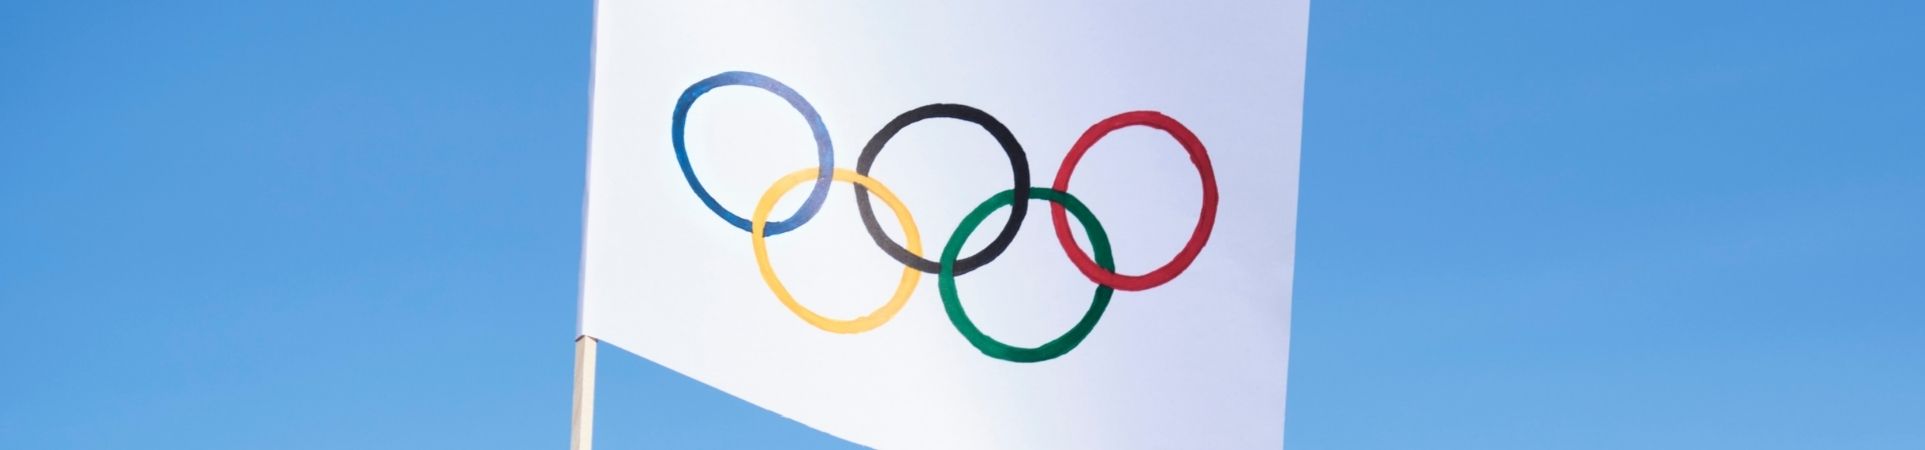 Consejos e ideas para ver los Juegos Olímpicos con niños